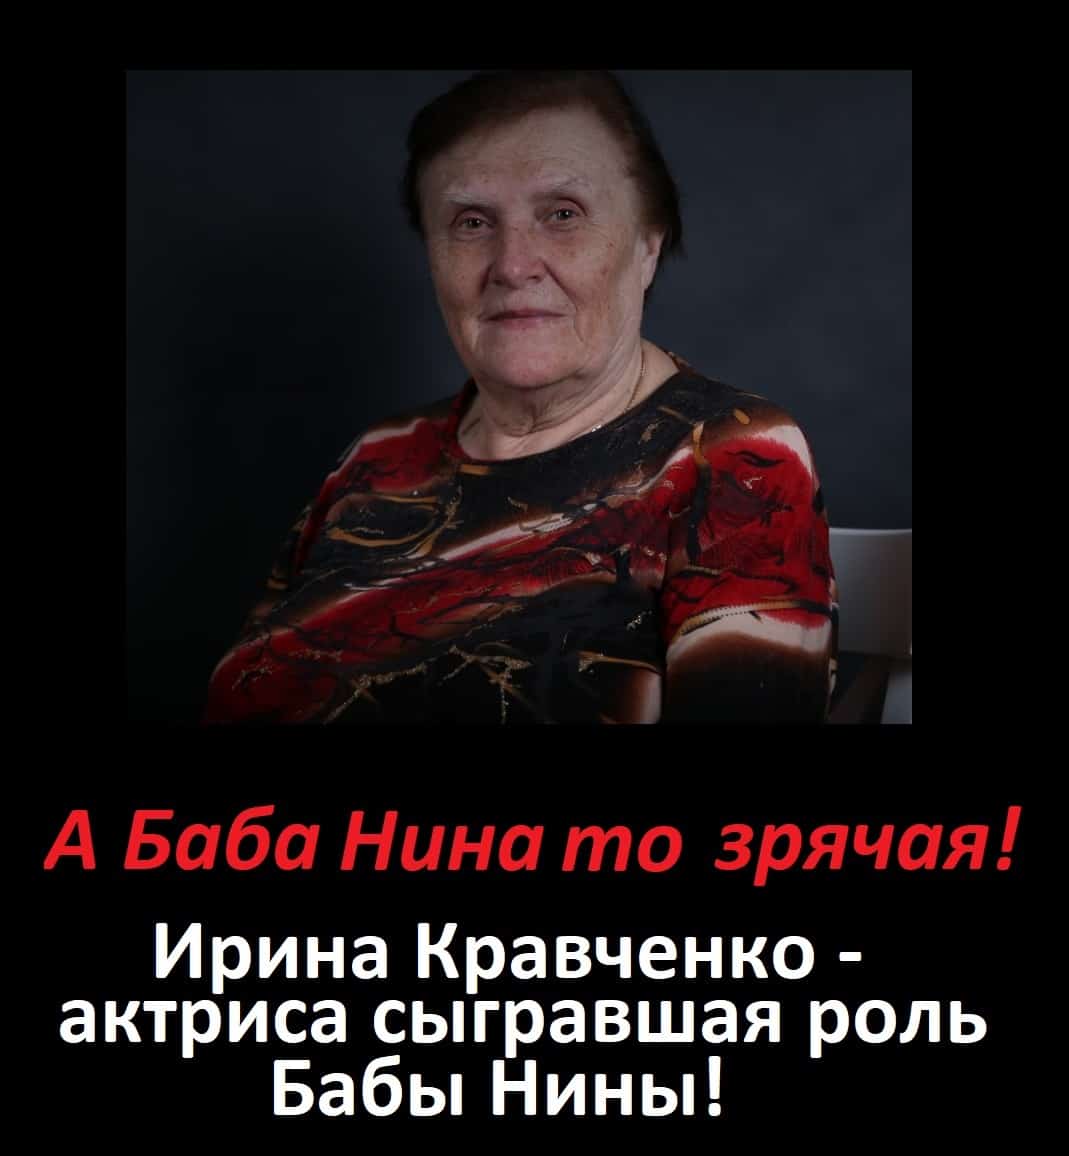 Елена митюкова - биография, новости, личная жизнь, фото, видео - stuki-druki.com